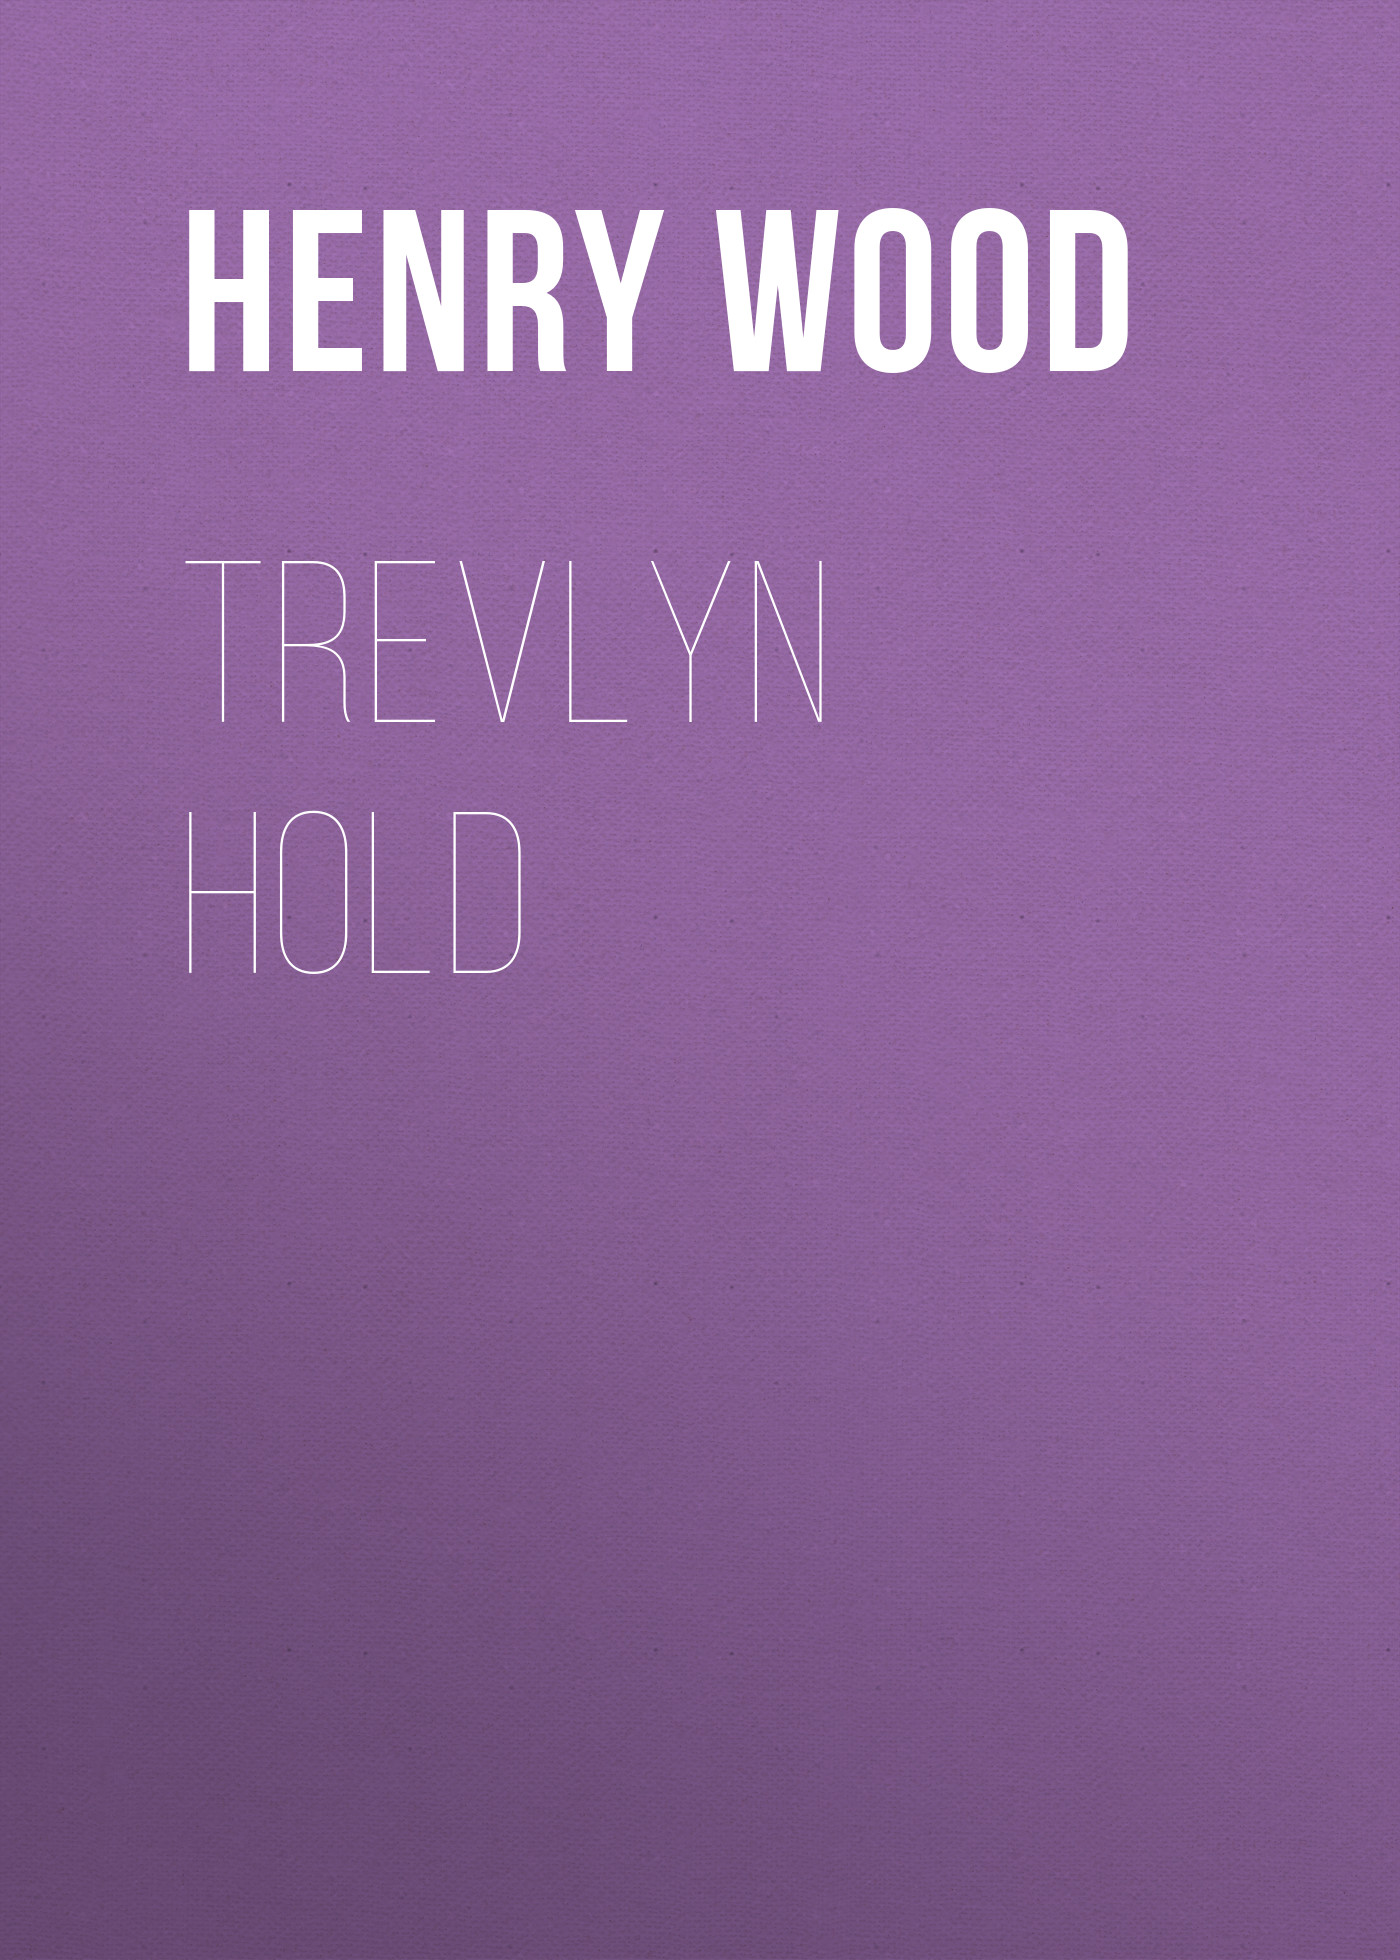 Книга Trevlyn Hold из серии , созданная Henry Wood, может относится к жанру Зарубежная классика, Литература 19 века, Зарубежная старинная литература. Стоимость электронной книги Trevlyn Hold с идентификатором 35007865 составляет 0 руб.